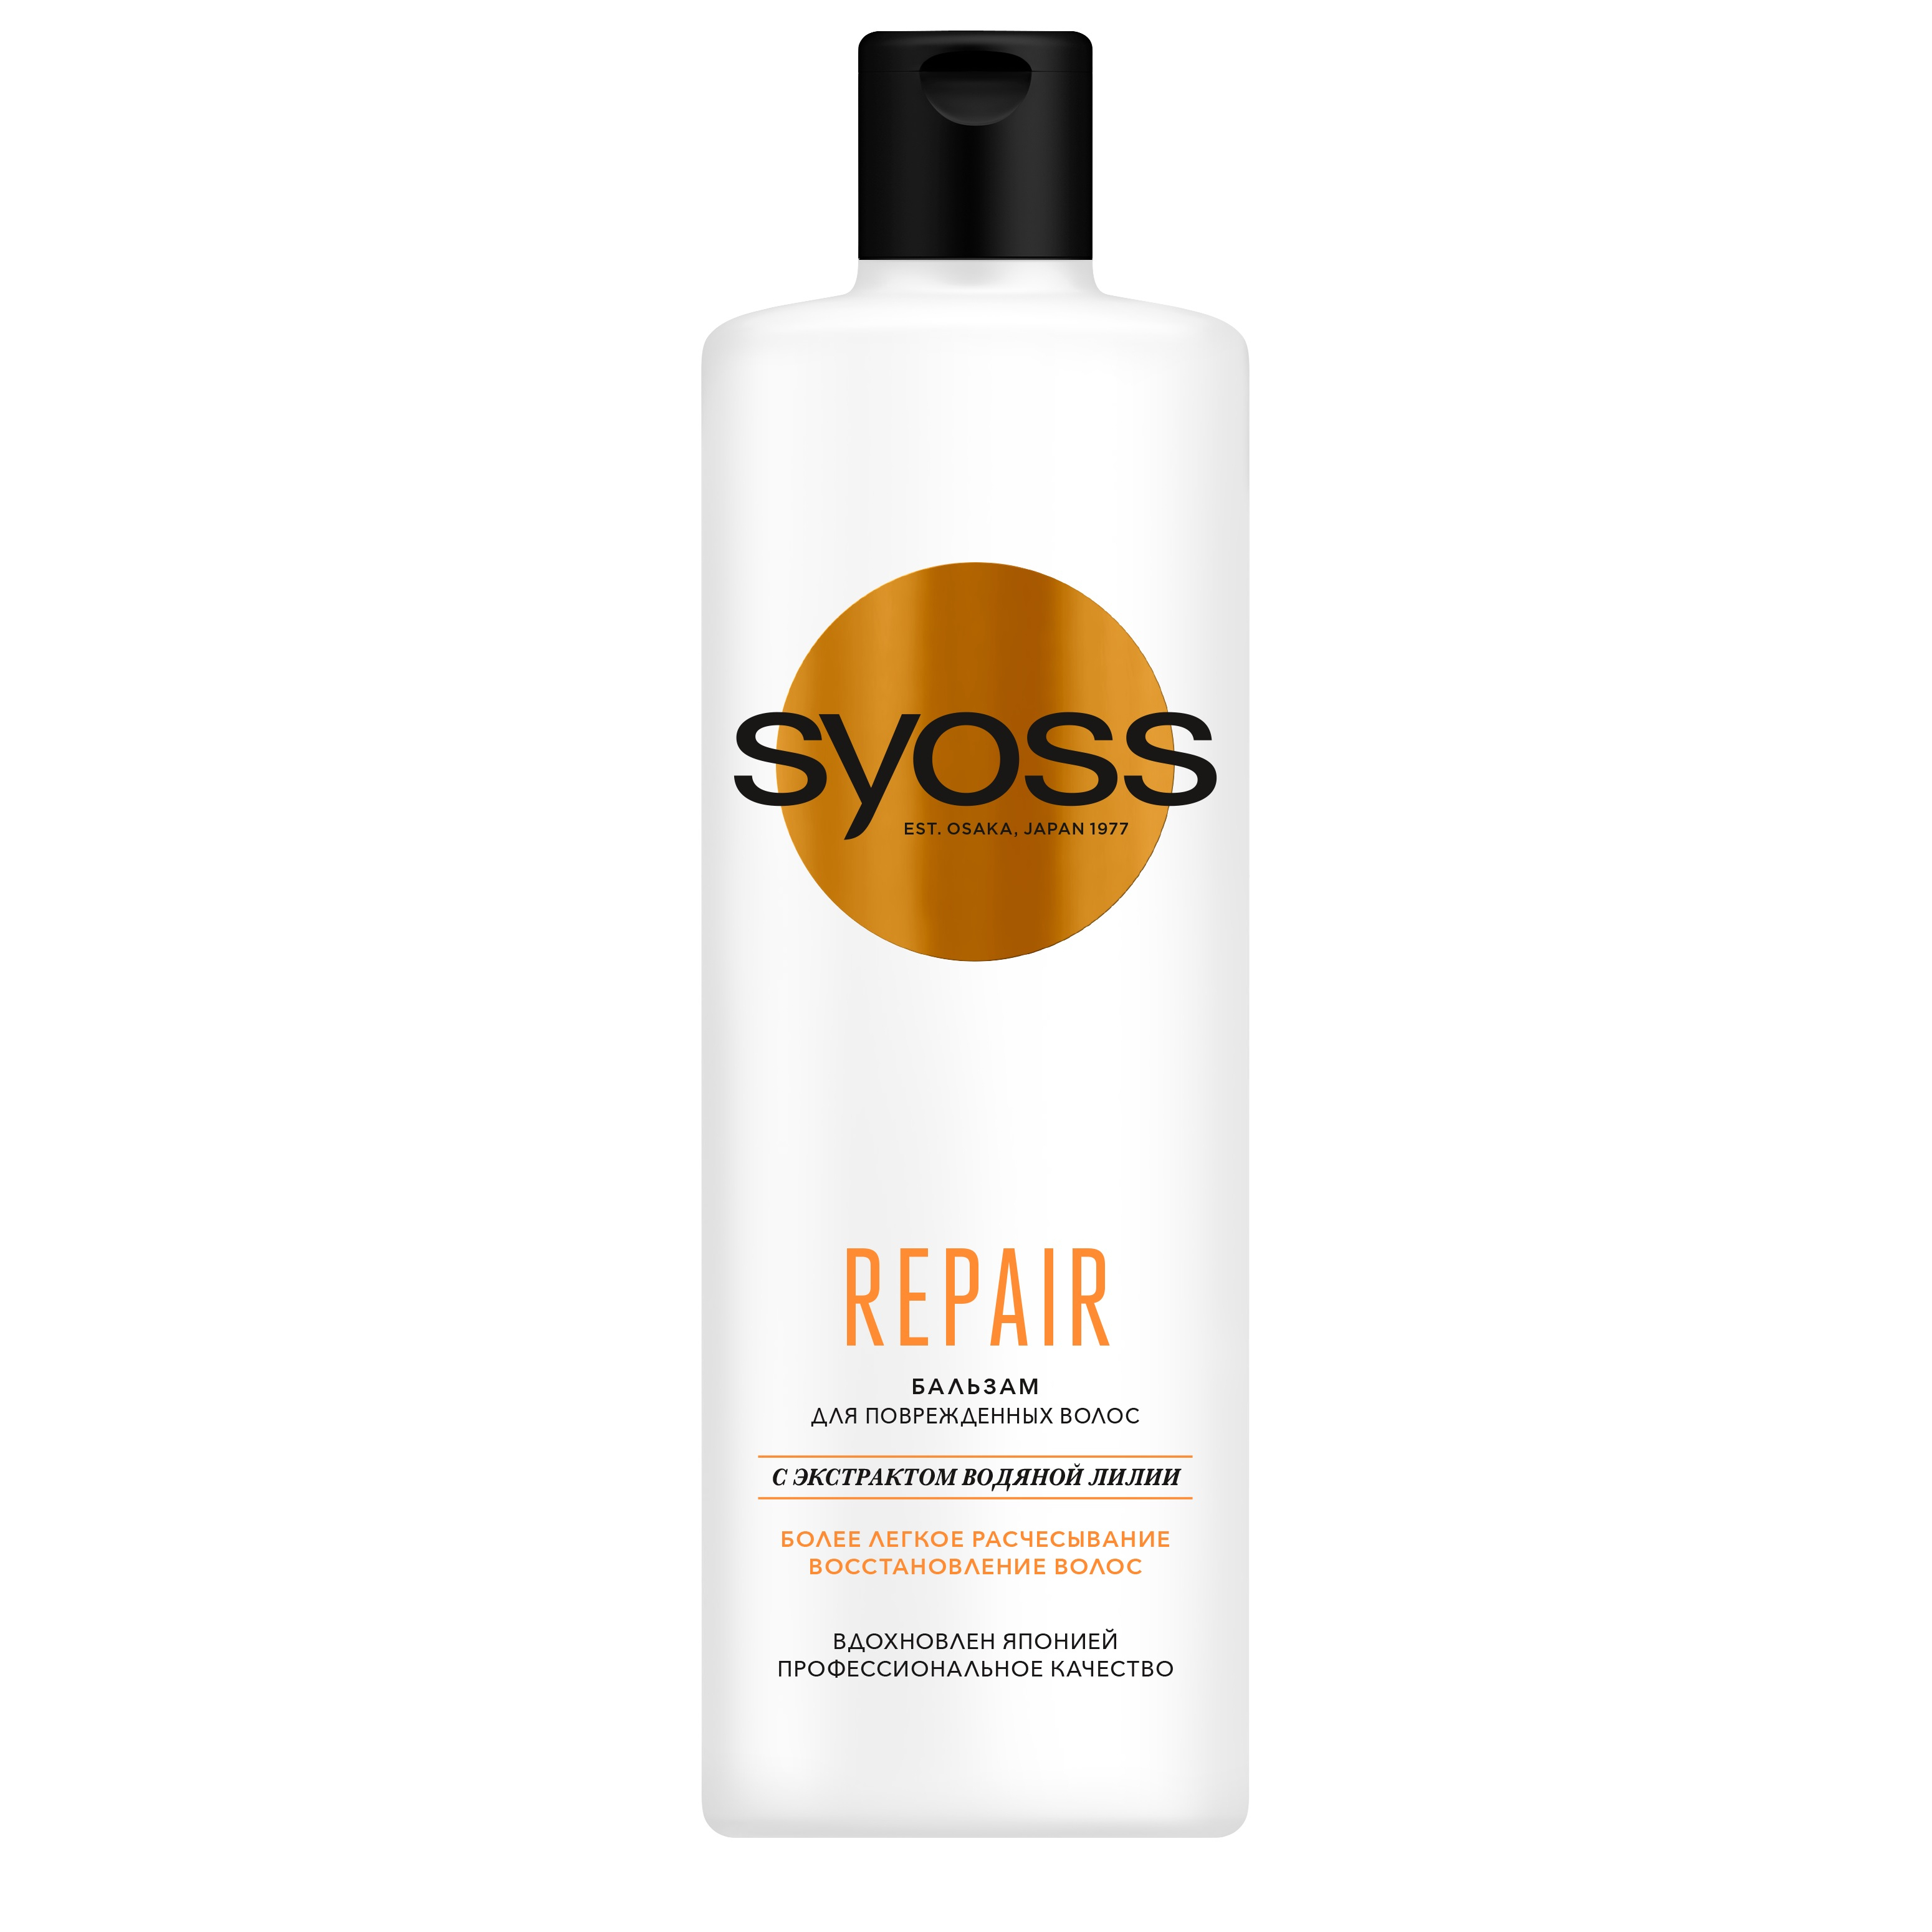 Бальзам для волос Syoss Repair восстанавливающий 450 мл бальзам восстанавливающий beautydose для окрашенных и повреждённых волос 250 мл